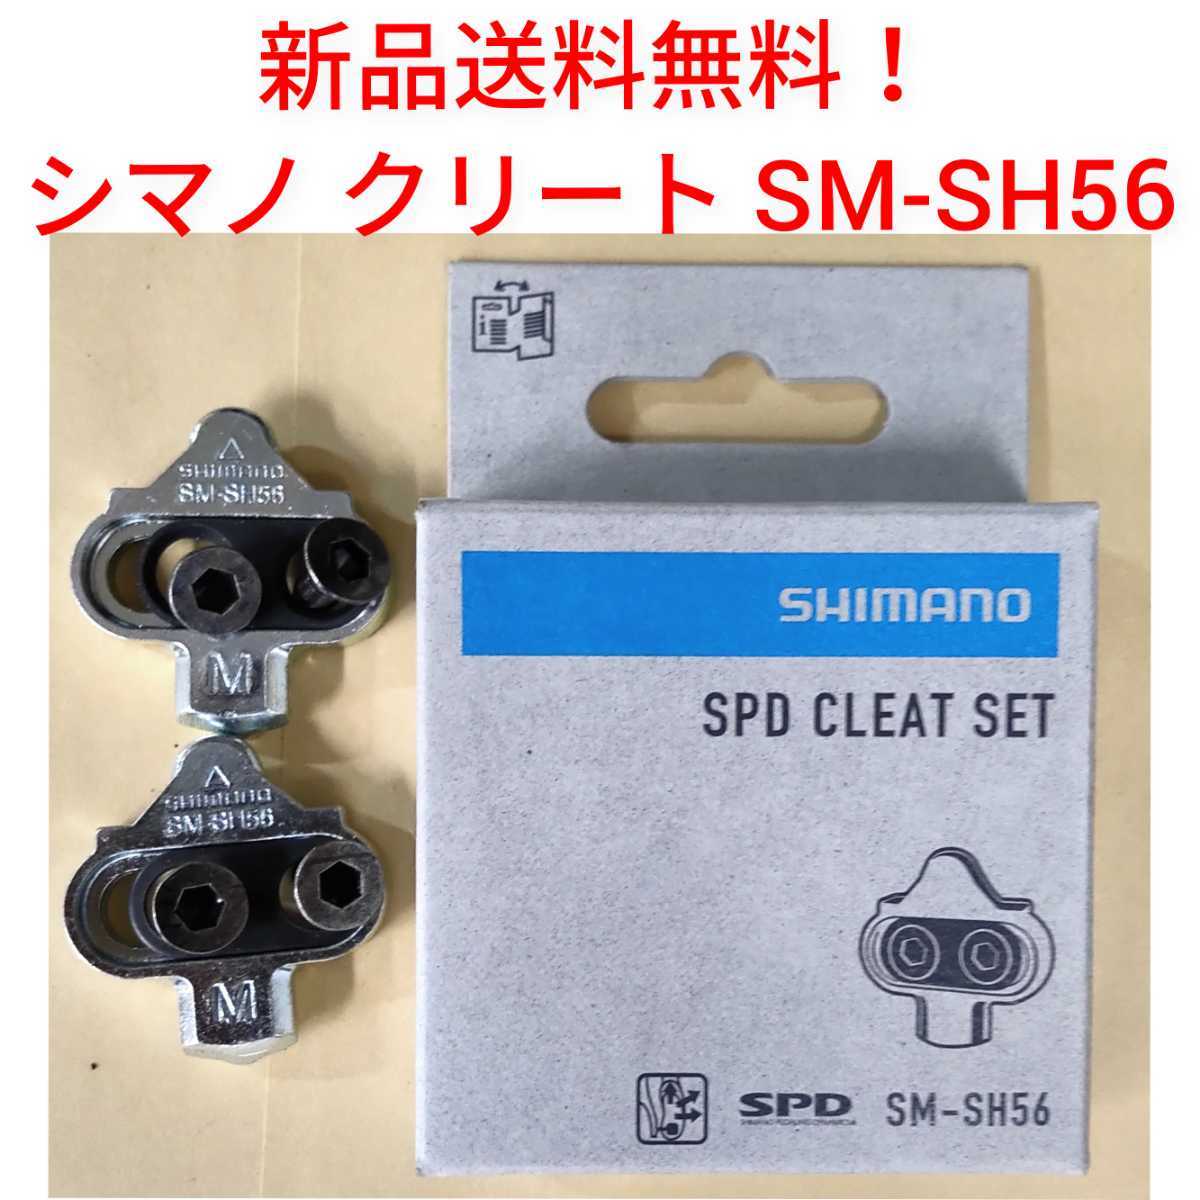 【新品送料無料】 クリートセット シマノ SM-SH56 クリートセット SHIMANO 自転車 　SPD CLEAT SET マルチモード SMSH56 _画像1